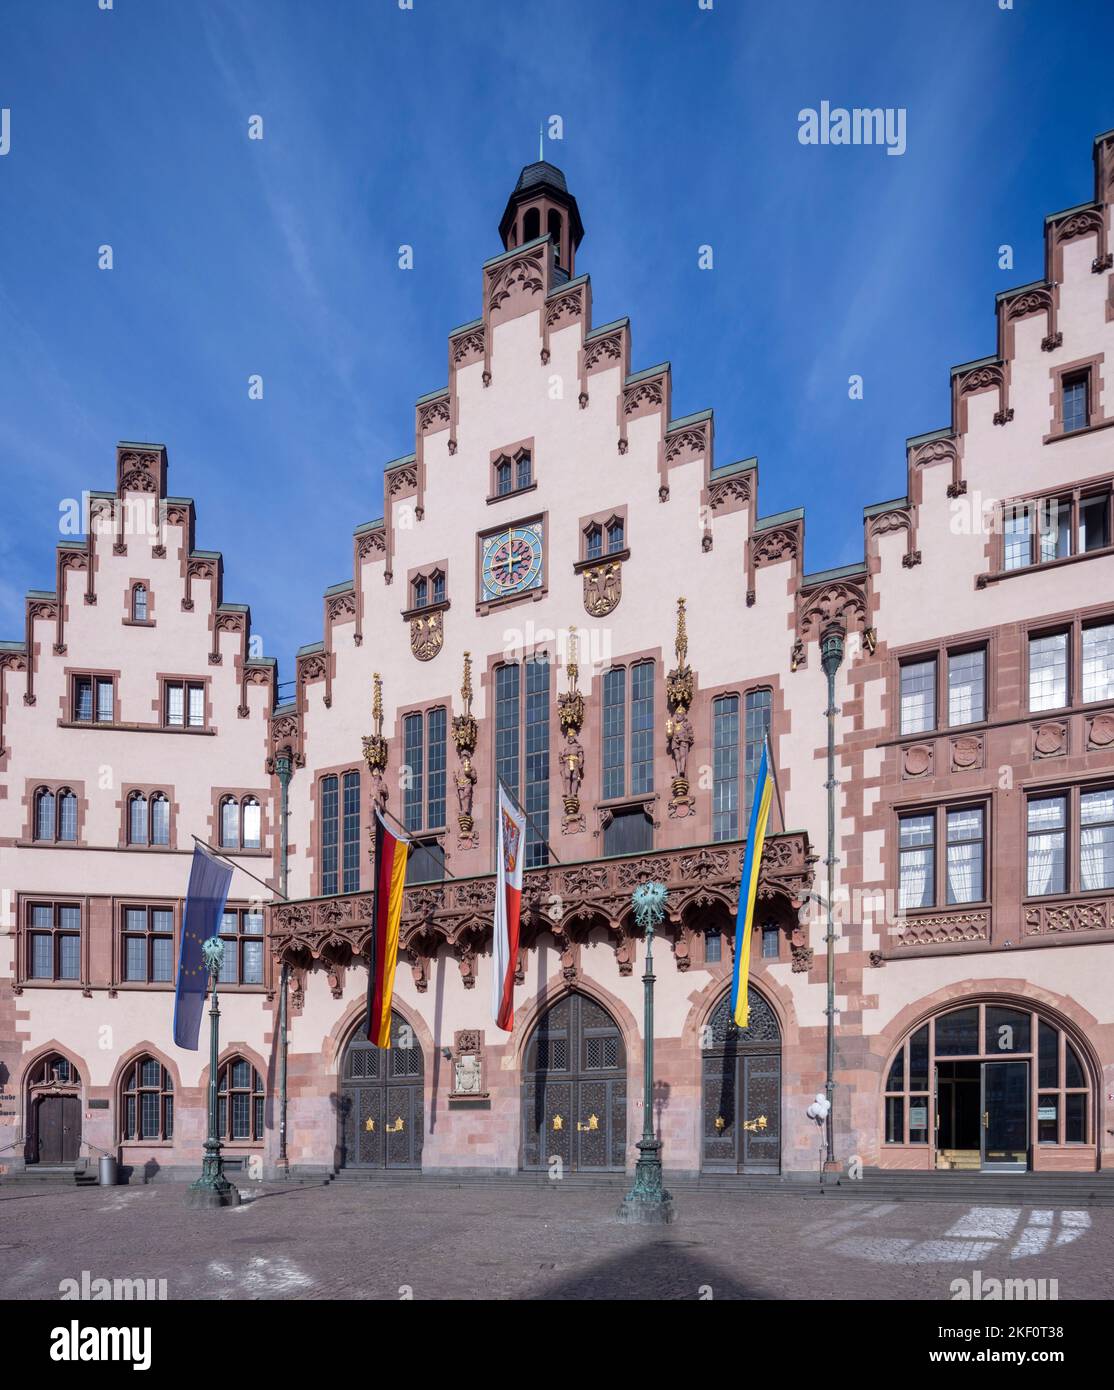 Il municipio (Römer), il municipio di Francoforte, Francoforte sul meno, Germania Foto Stock